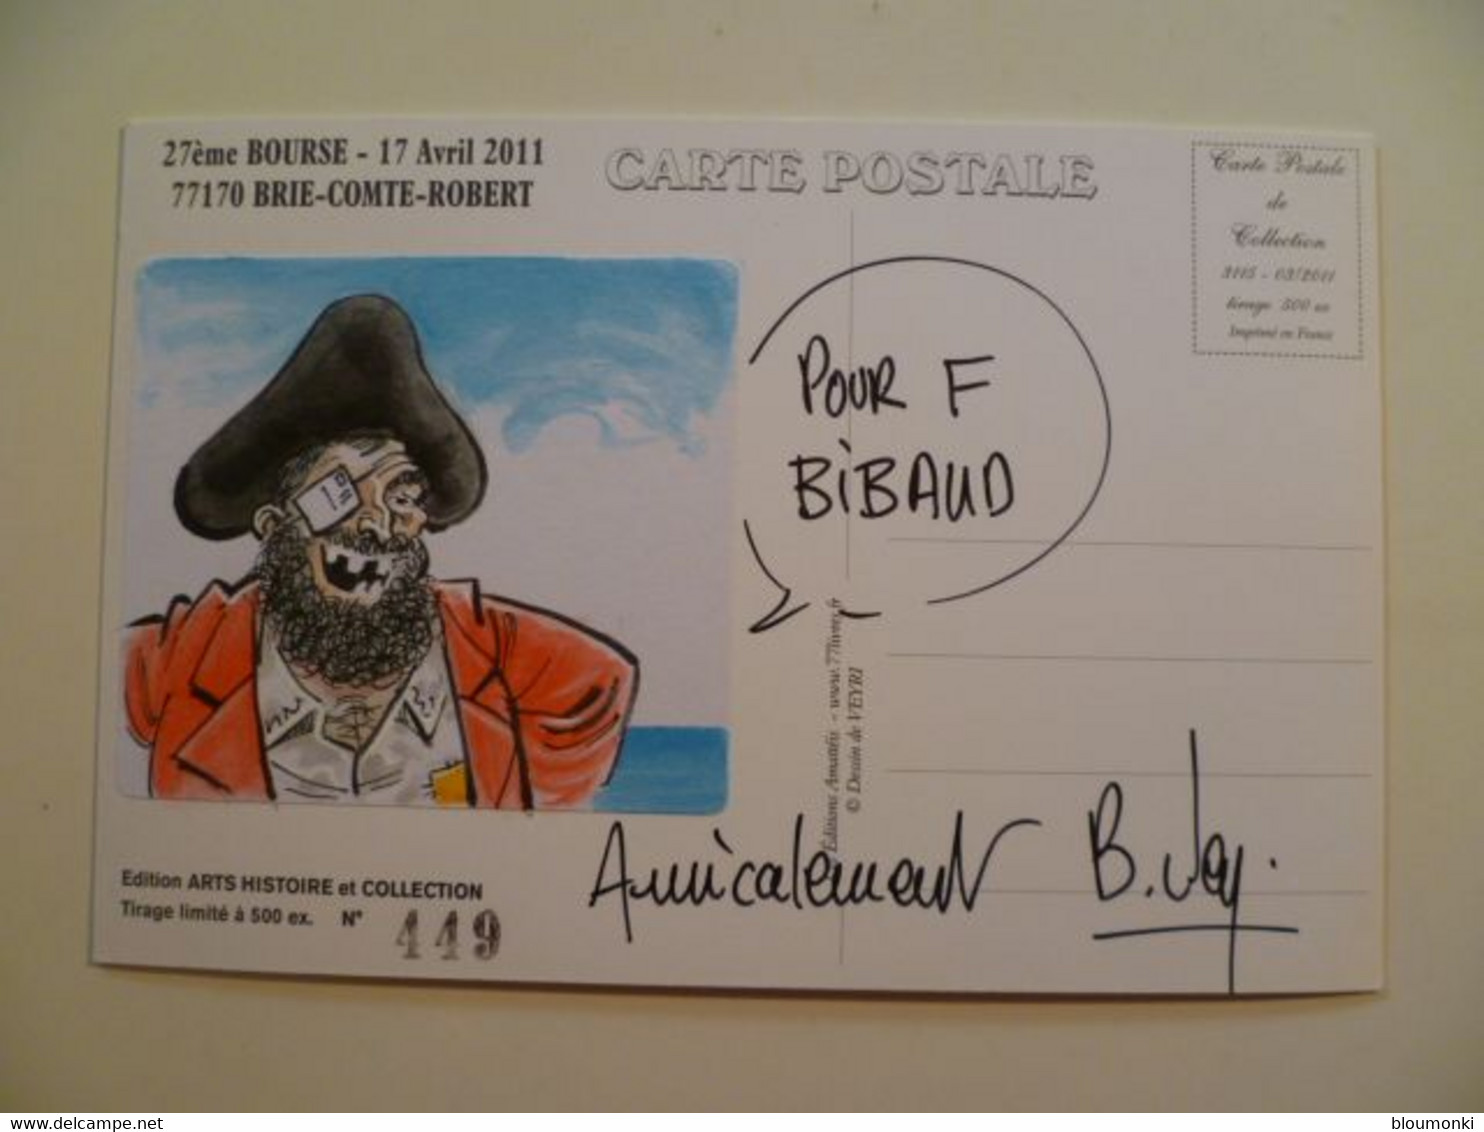 Carte Postale Illustrateur Bernard VEYRI / Dessin Unique Dédicace F Bibaud / Brie-Comte-Robert Bourse Cartophile - Veyri, Bernard